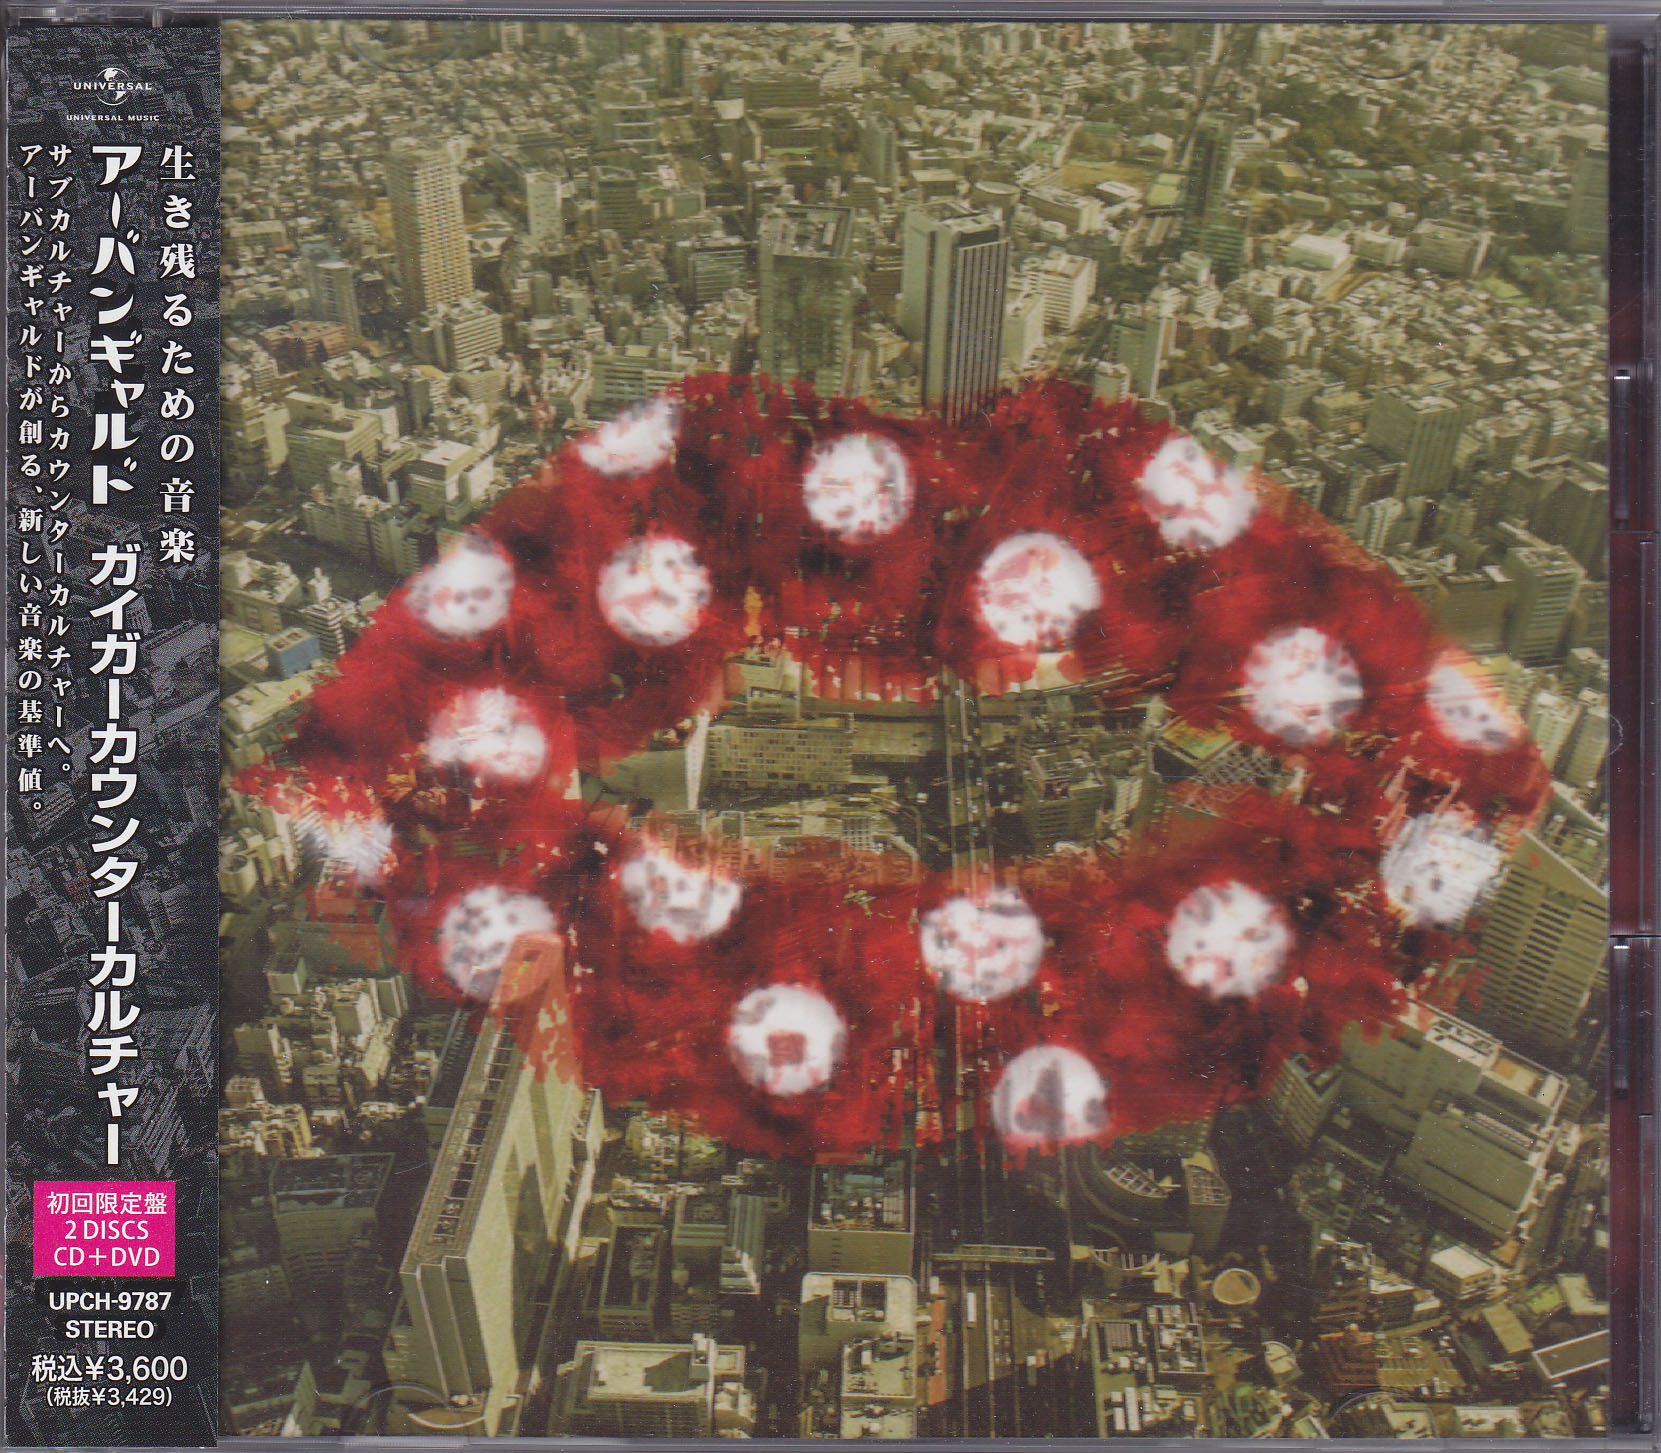 アーバンギャルド ( アーバンギャルド )  の CD 【初回盤】ガイガーカウンターカルチャー